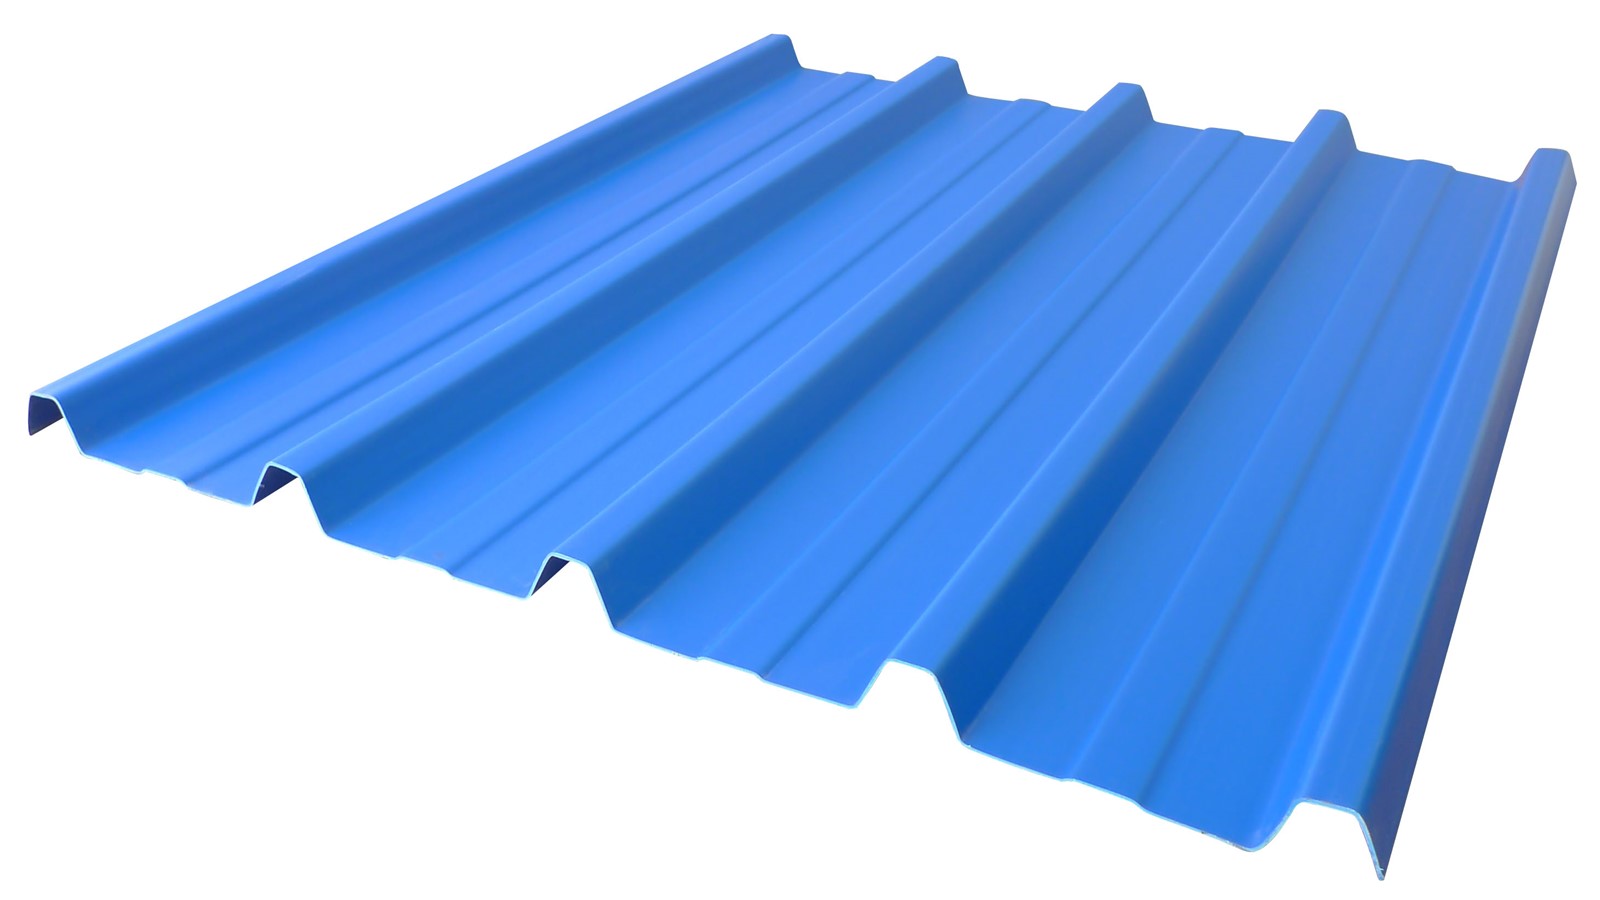 نمونه کاربرد پوشش های سقفی یو پی وی سی که جایگزین ساندویچ پنل استفاده شده است